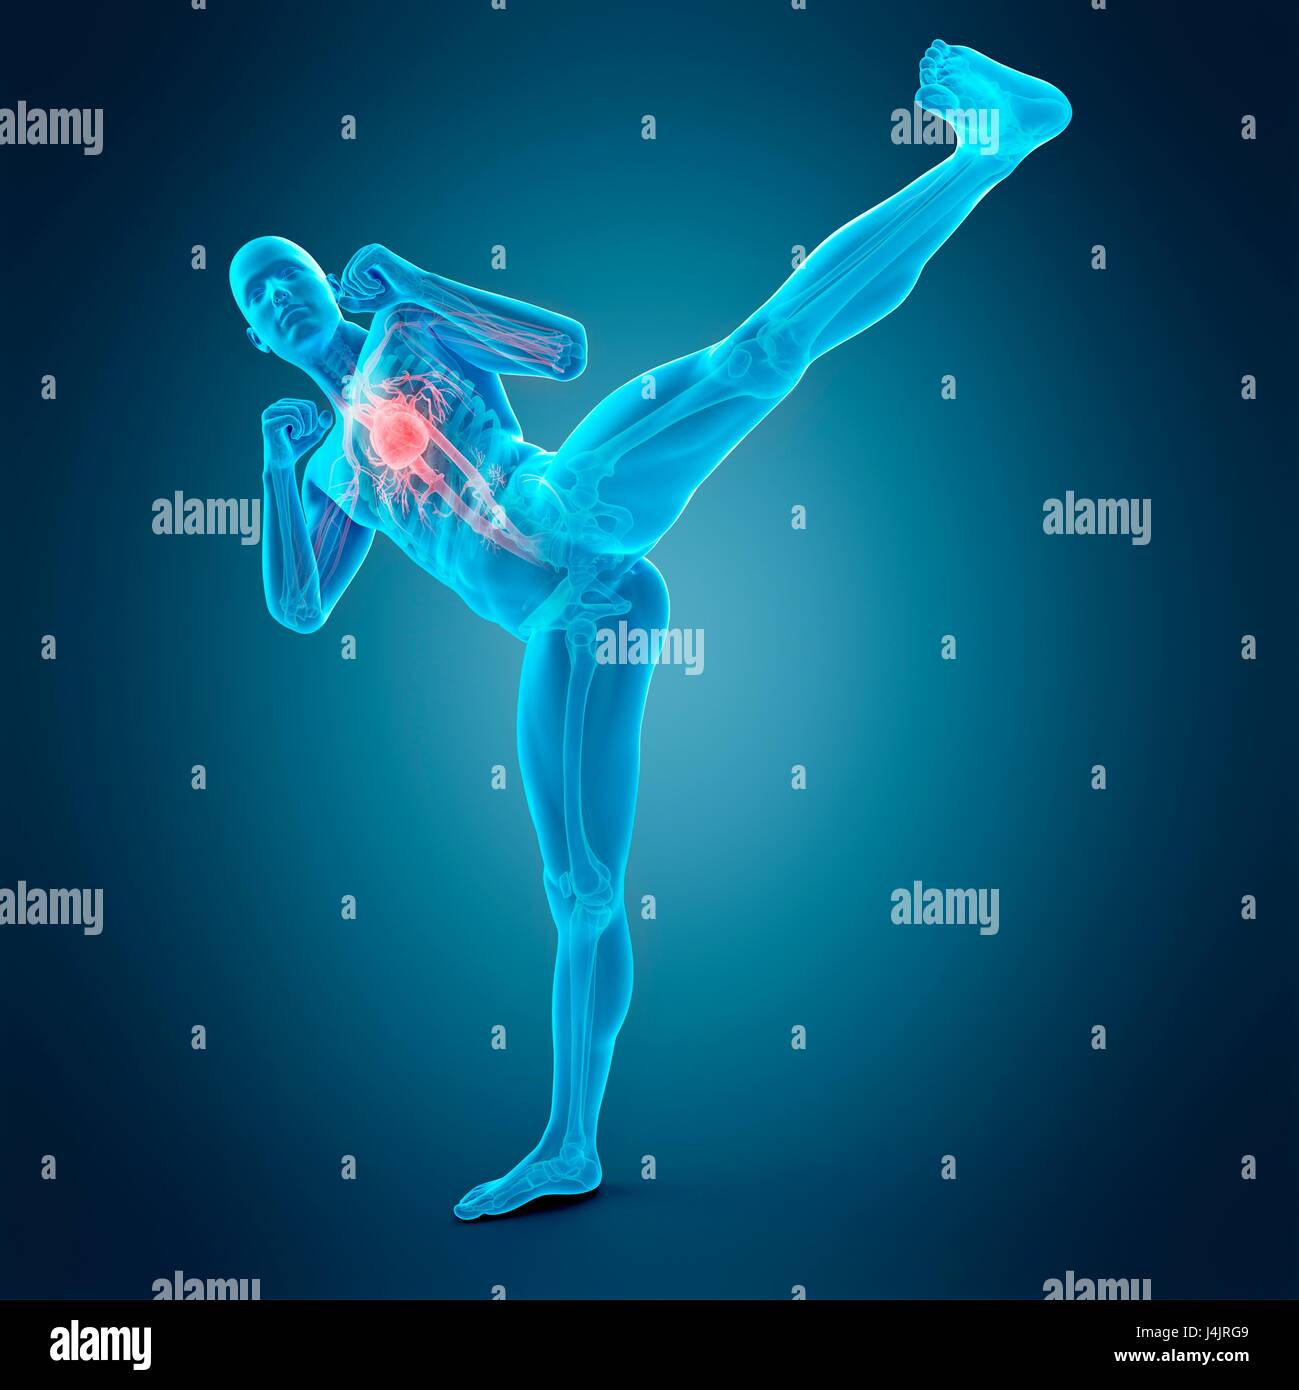 Anatomie de personne faisant high kick, illustration. Banque D'Images